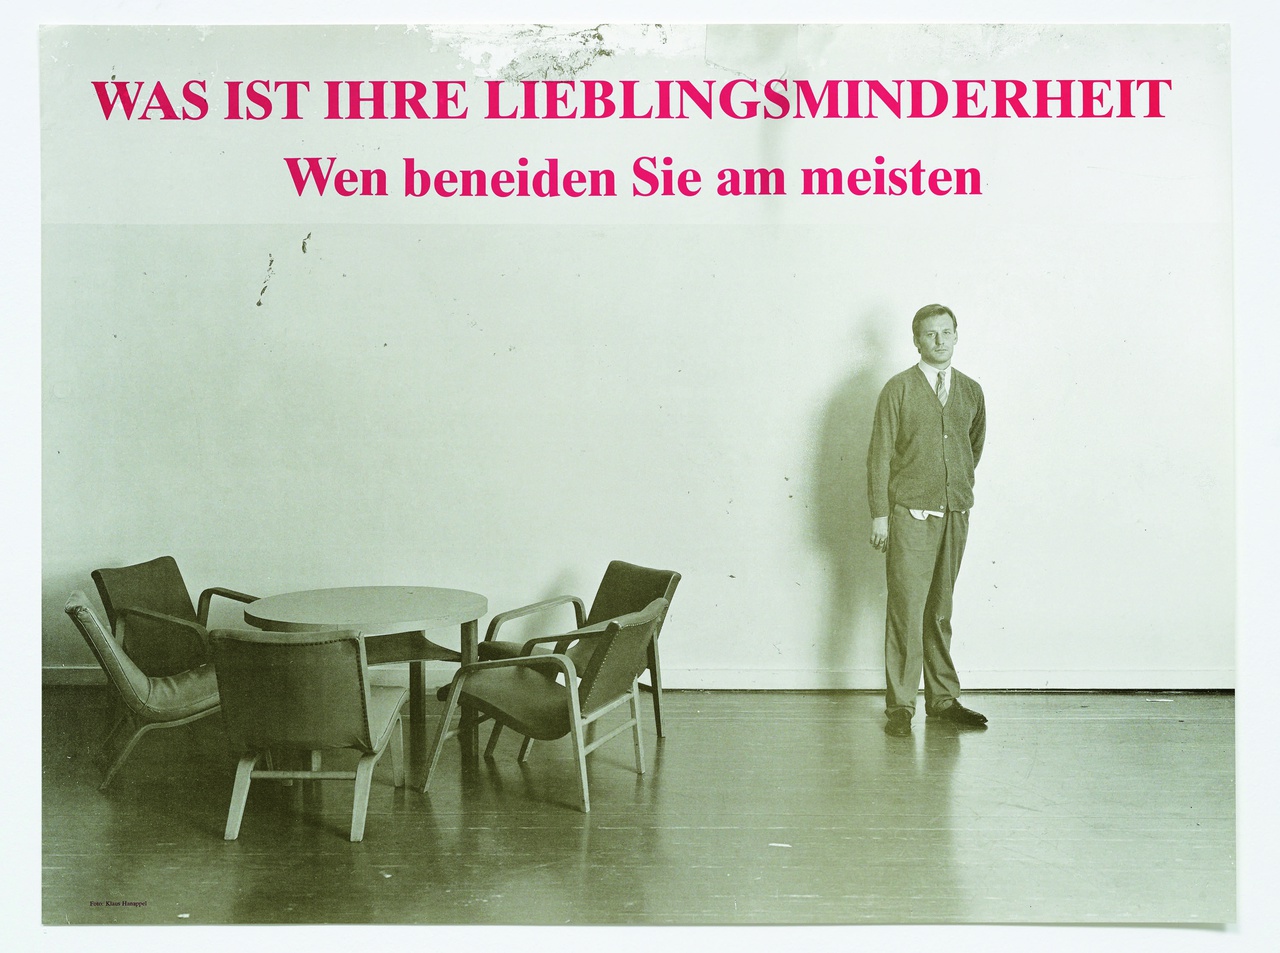 Martin Kippenberger, „Was ist Ihre Lieblingsminderheit. Wen beneiden Sie am meisten“, Plakat / poster, 1985/86